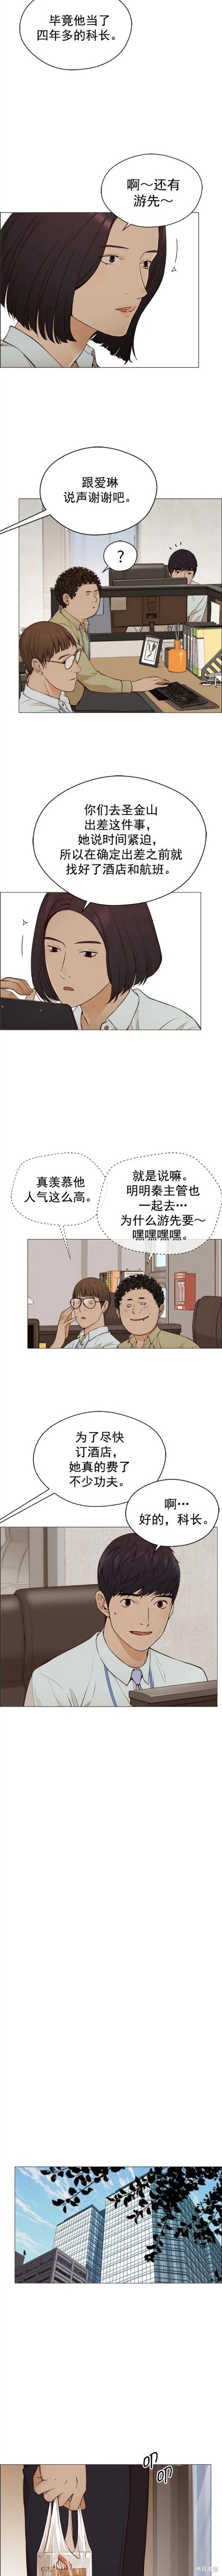 男子汉漫画,第128话2图